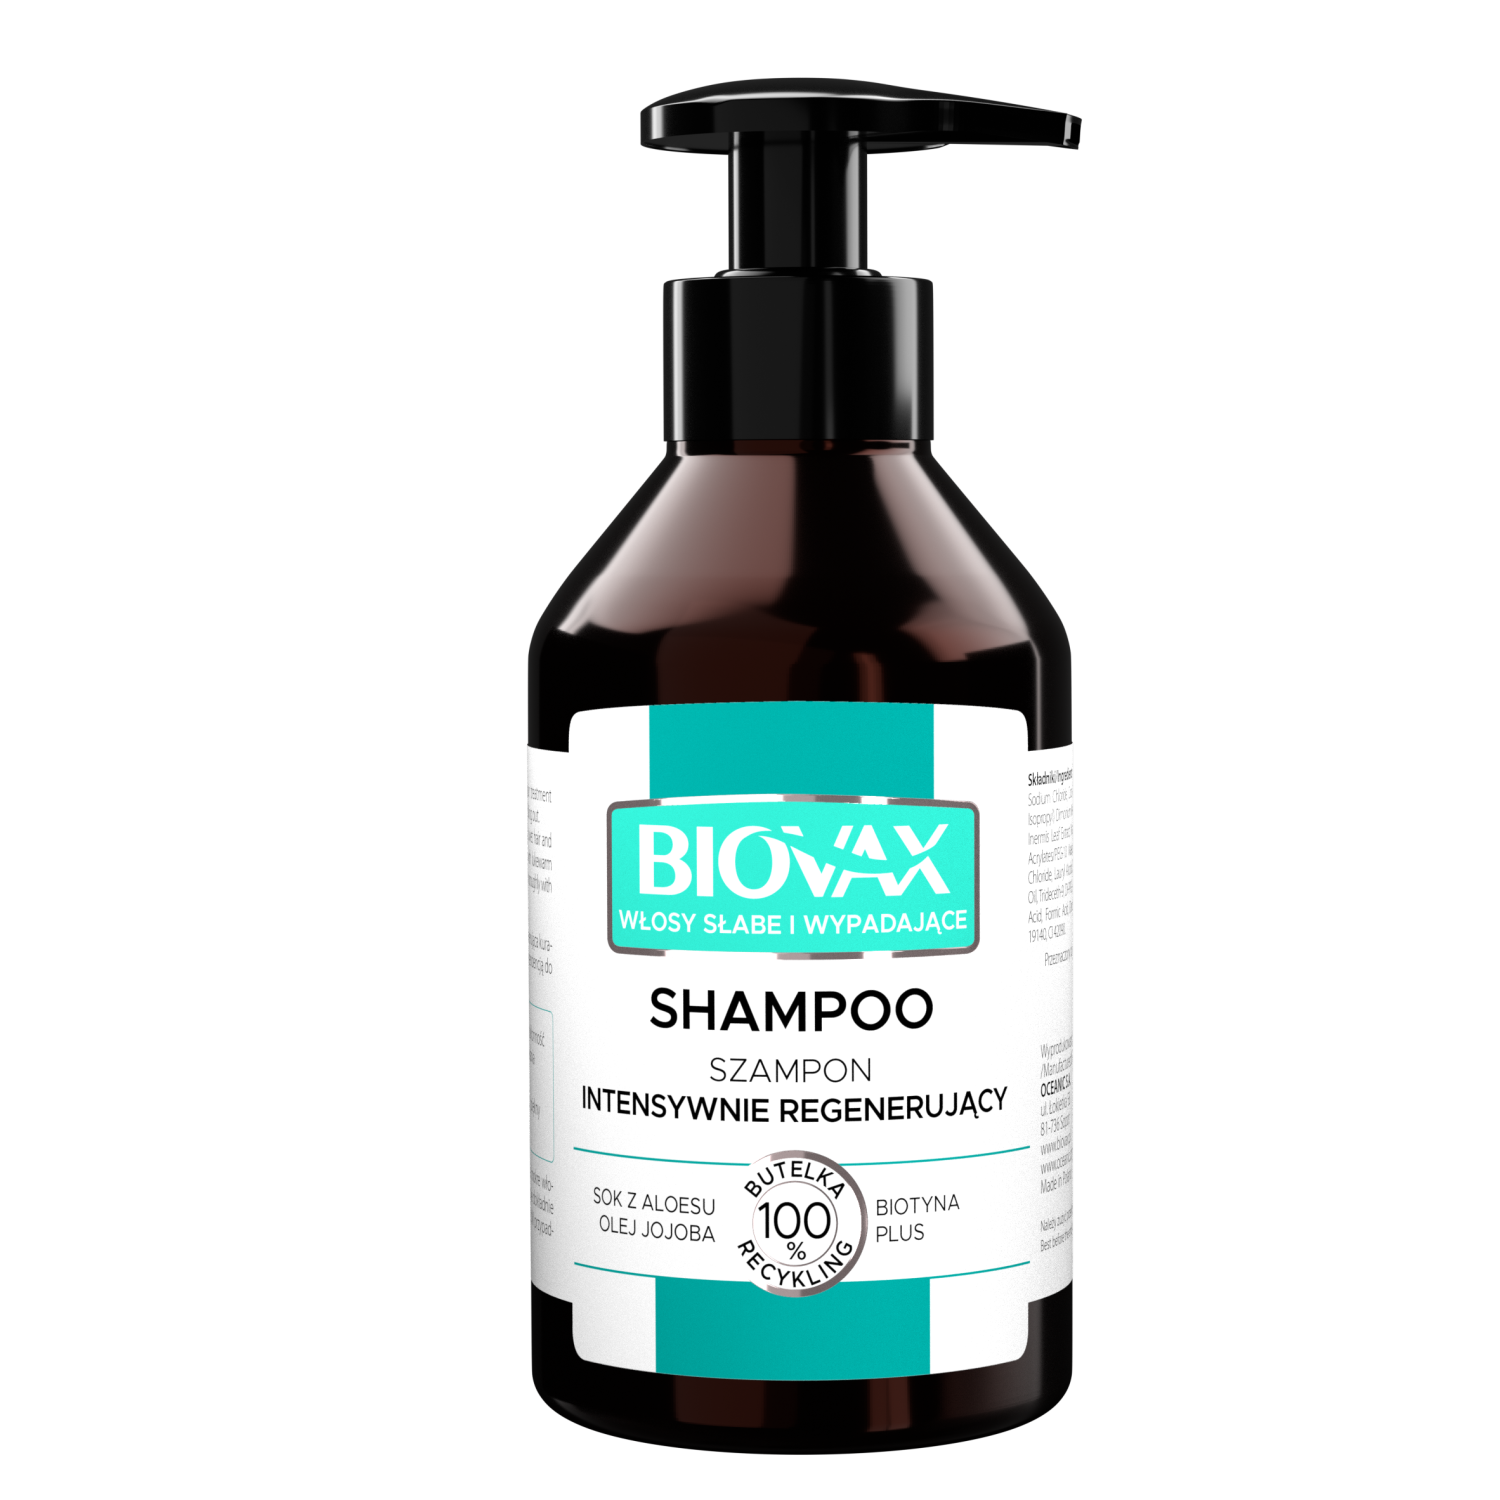 Biovax Biovax intensywnie regenerujący szampon do włosów słabych ze  skłonnościami do wypadania, 200 ml | hebe.pl